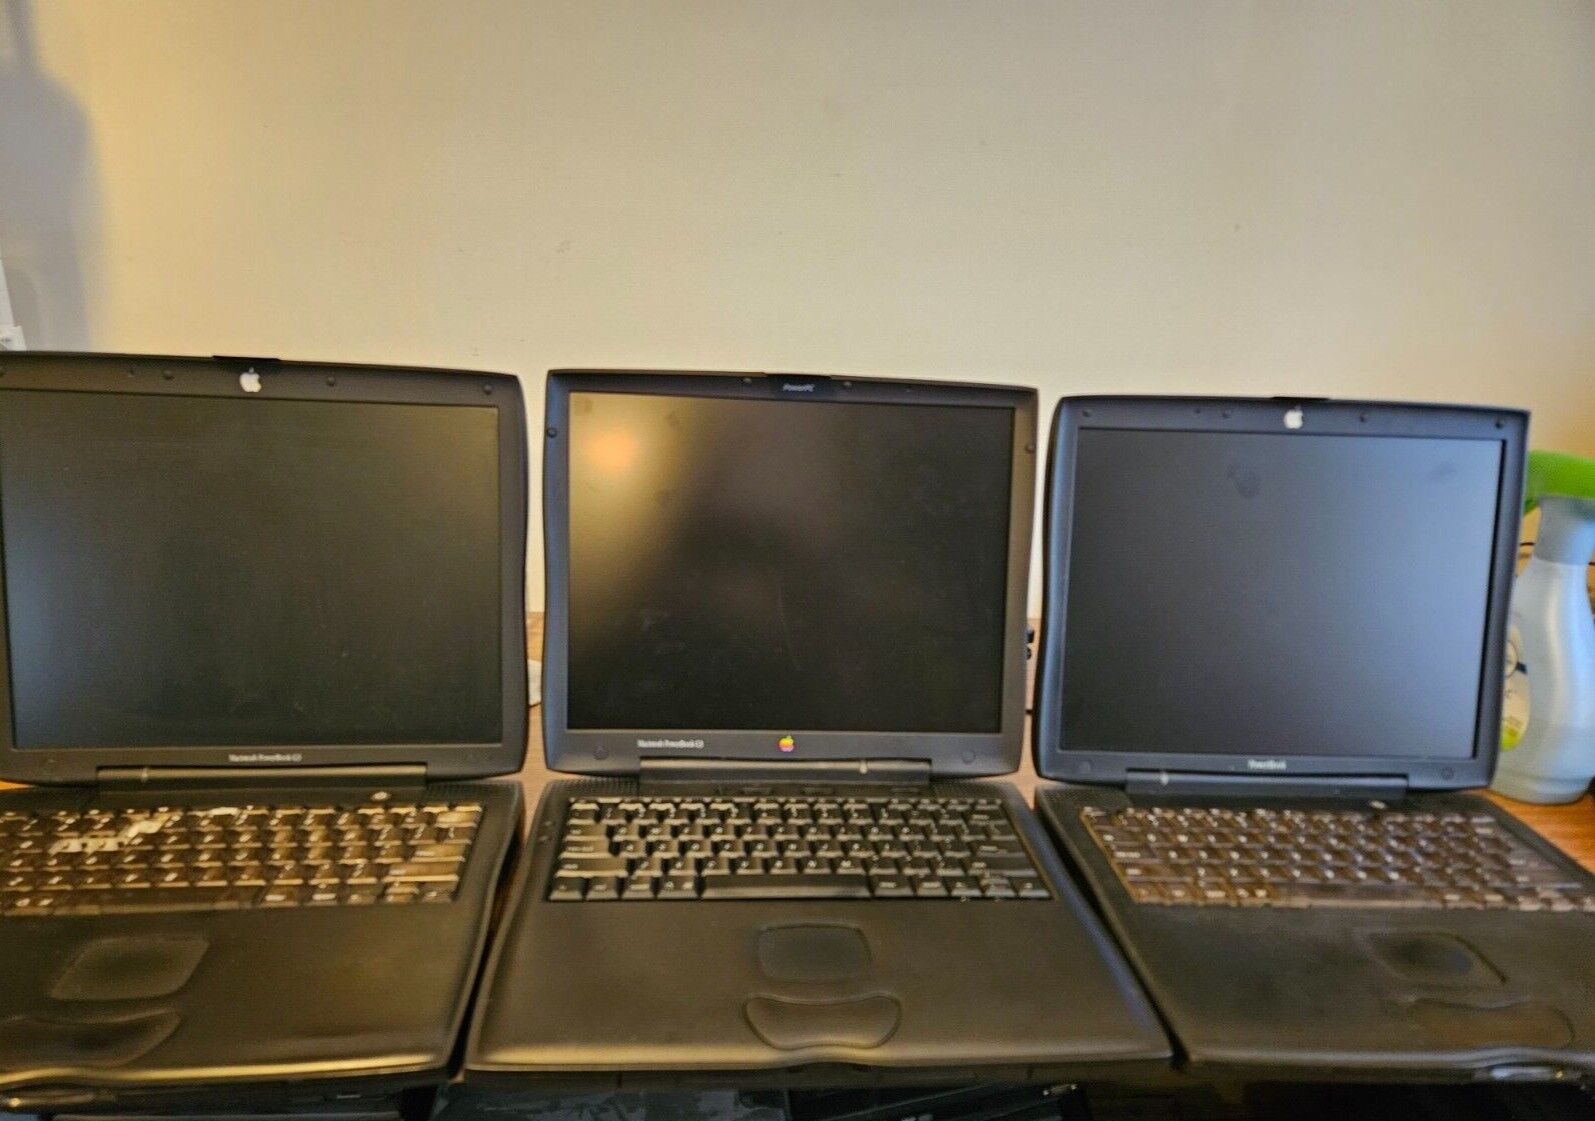 Lot of 3 Vintage Apple Macintosh PowerBook G3 M5343 M4753 M7572